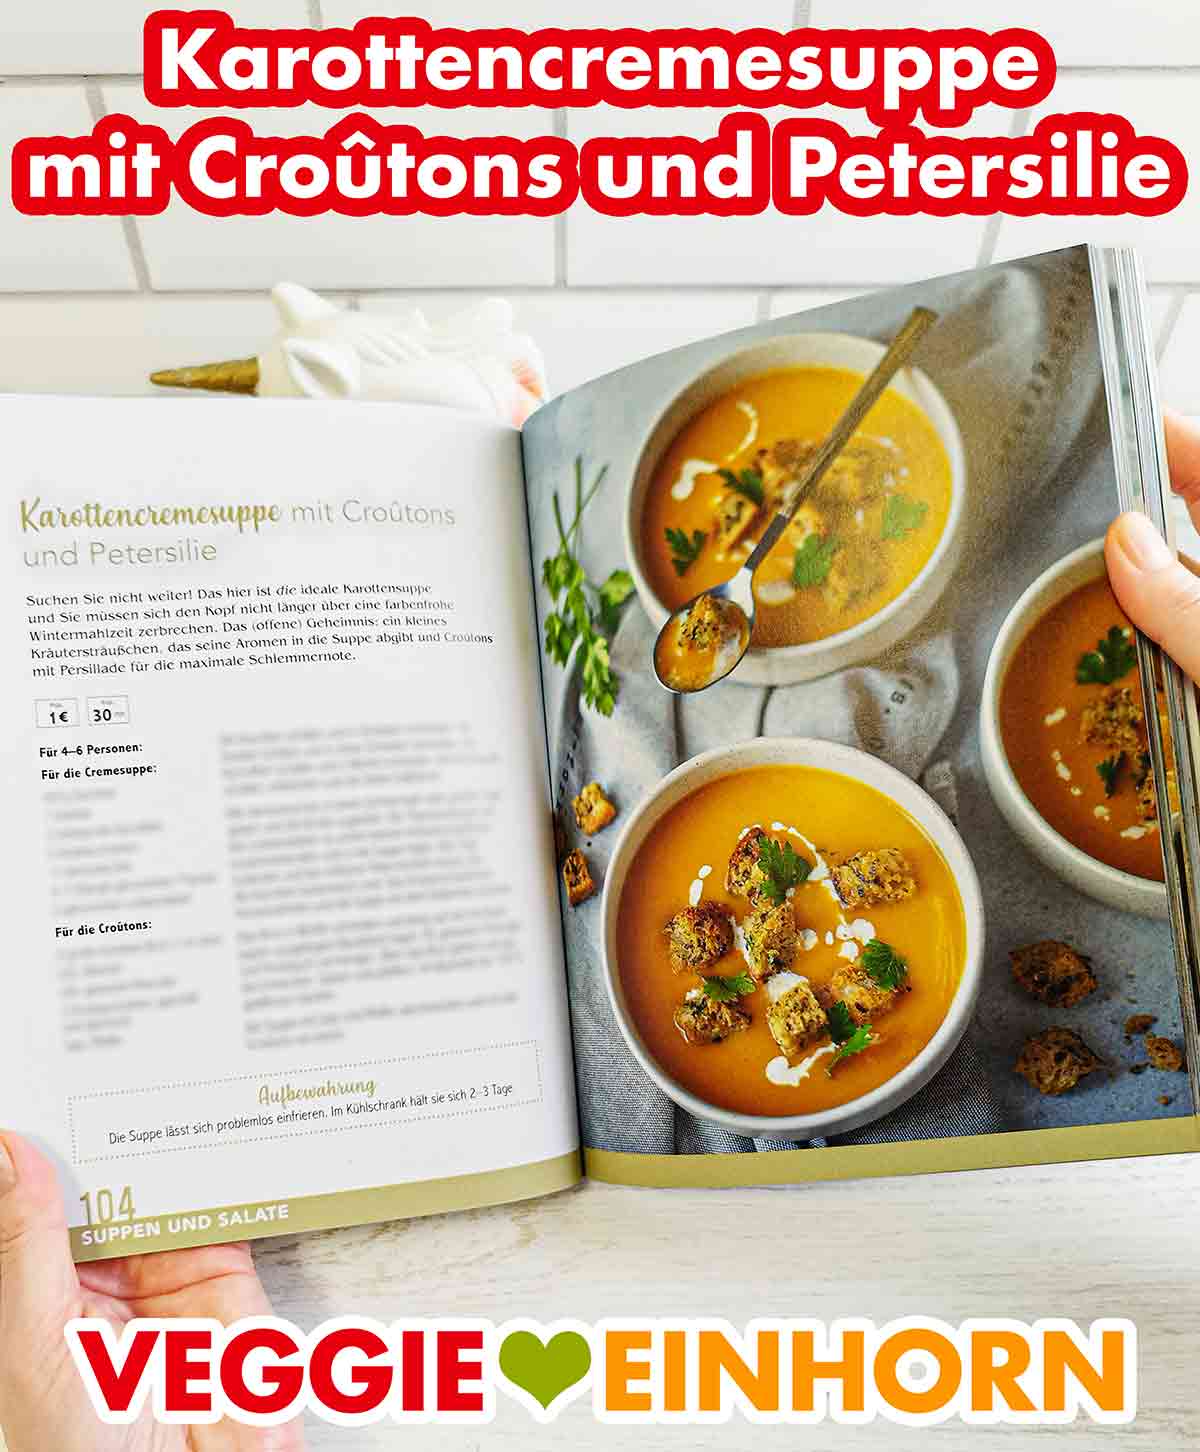 Karottencremesuppe mit Croûtons und Petersilie im Kochbuch Vegan und Günstig von Marie Laforêt